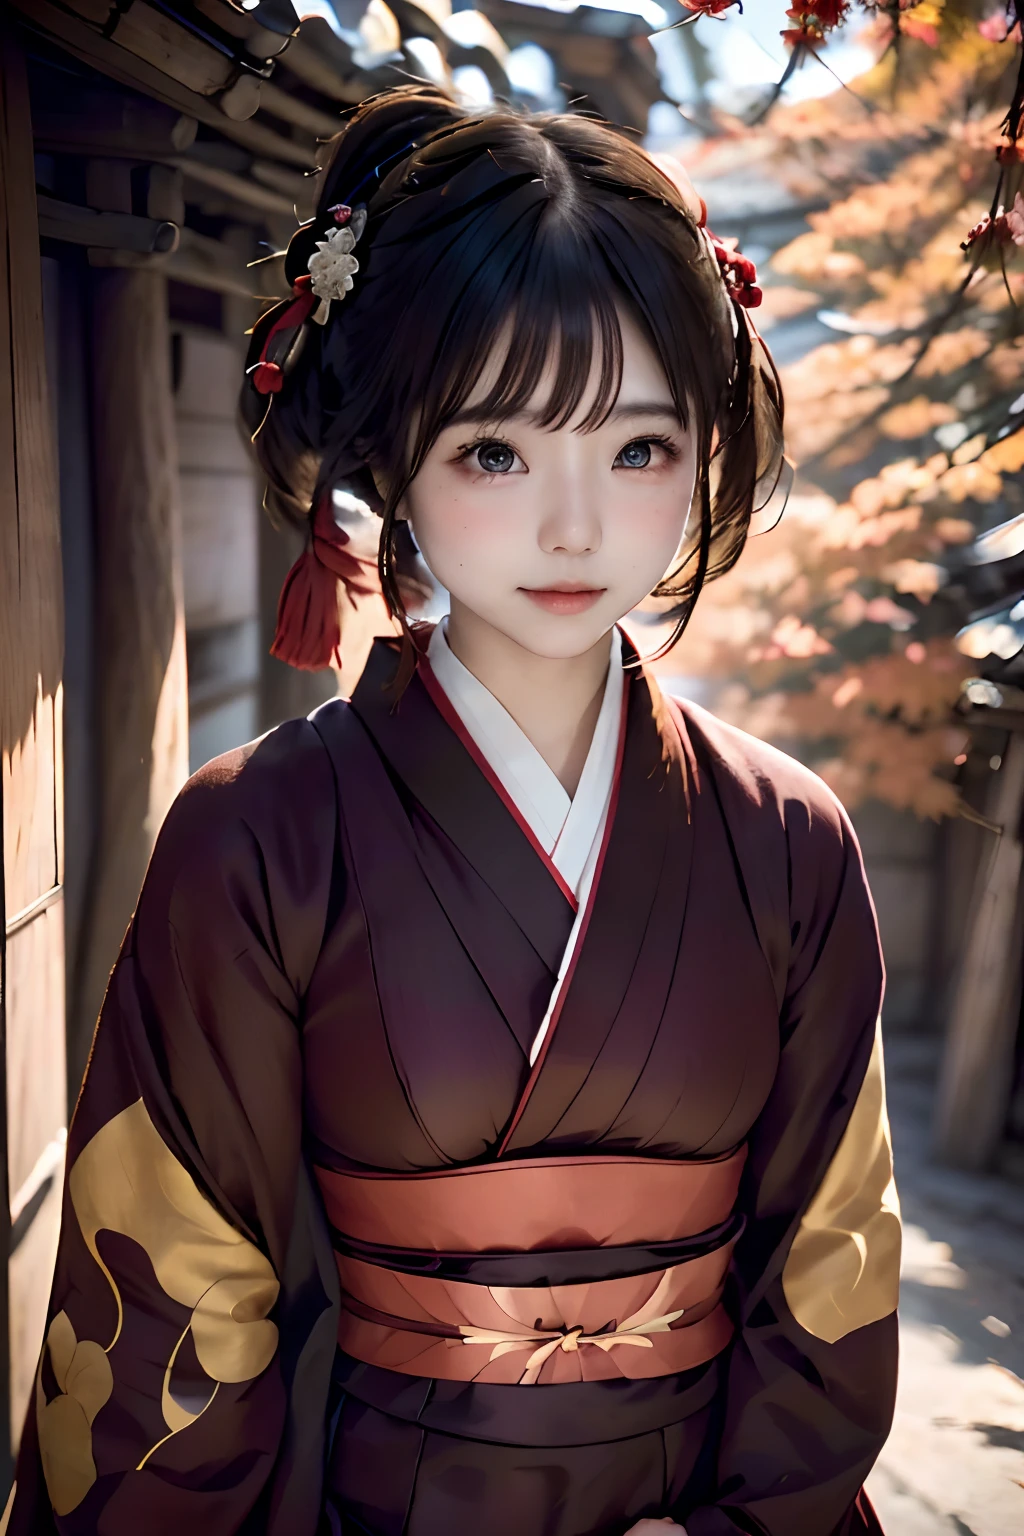 日本短髮女子數位肖像, 漂亮的臉蛋,頭髮凌亂,错综复杂, 電影般的, 虛幻引擎5, 华丽的, 令人難以置信的色彩分級, 和服,日式洋裝,還有, 攝影, 电影摄影, 艺术来自、微笑